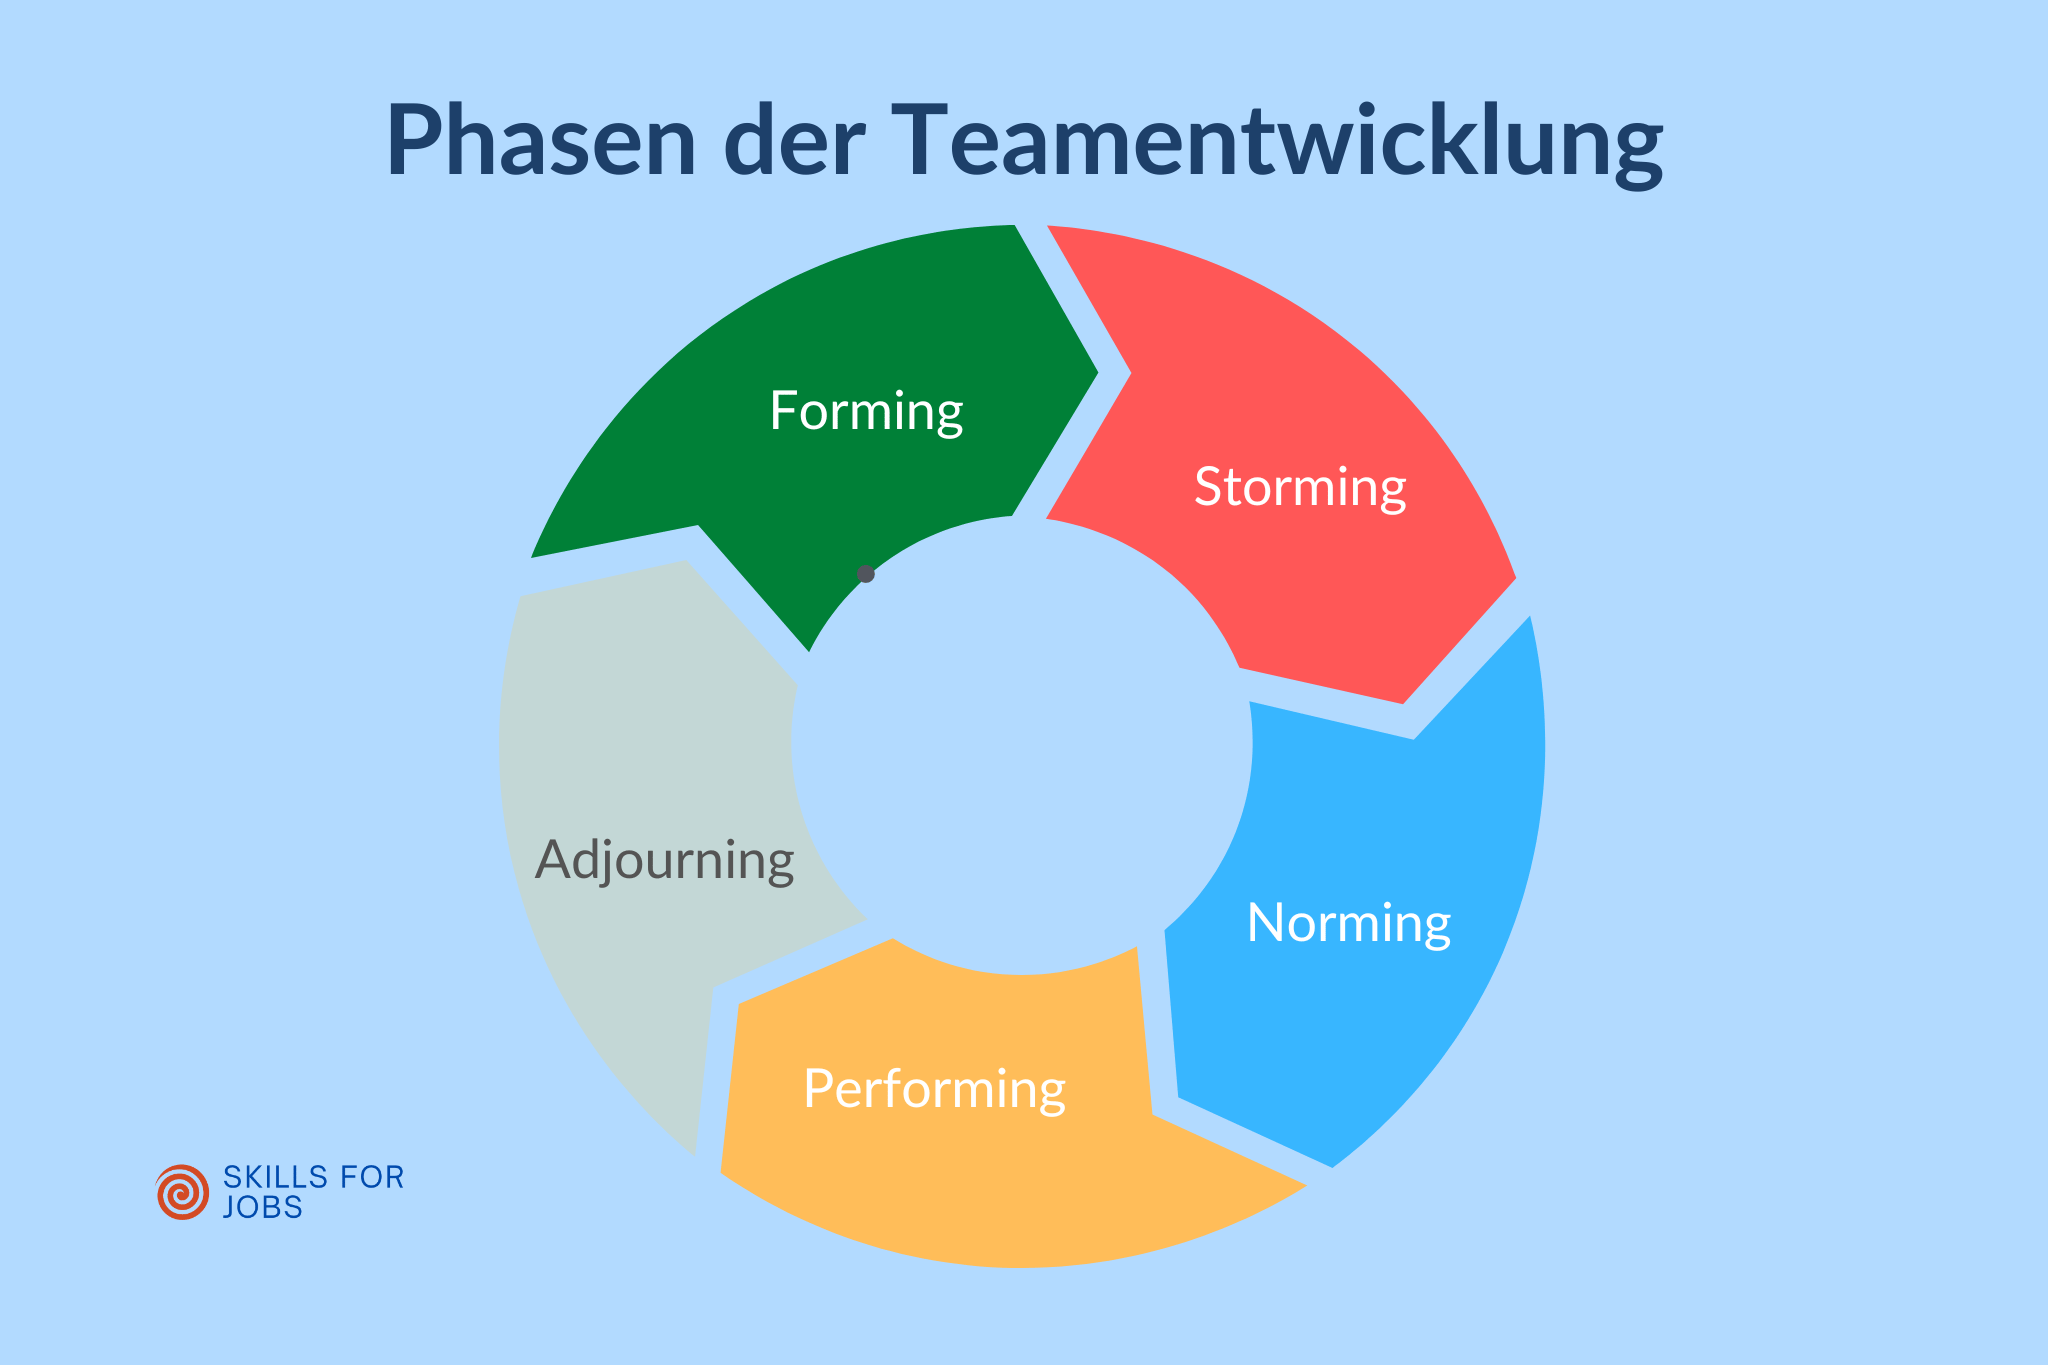 Teamphasen nach Tuckmann als ewiger Kreis dargestellt